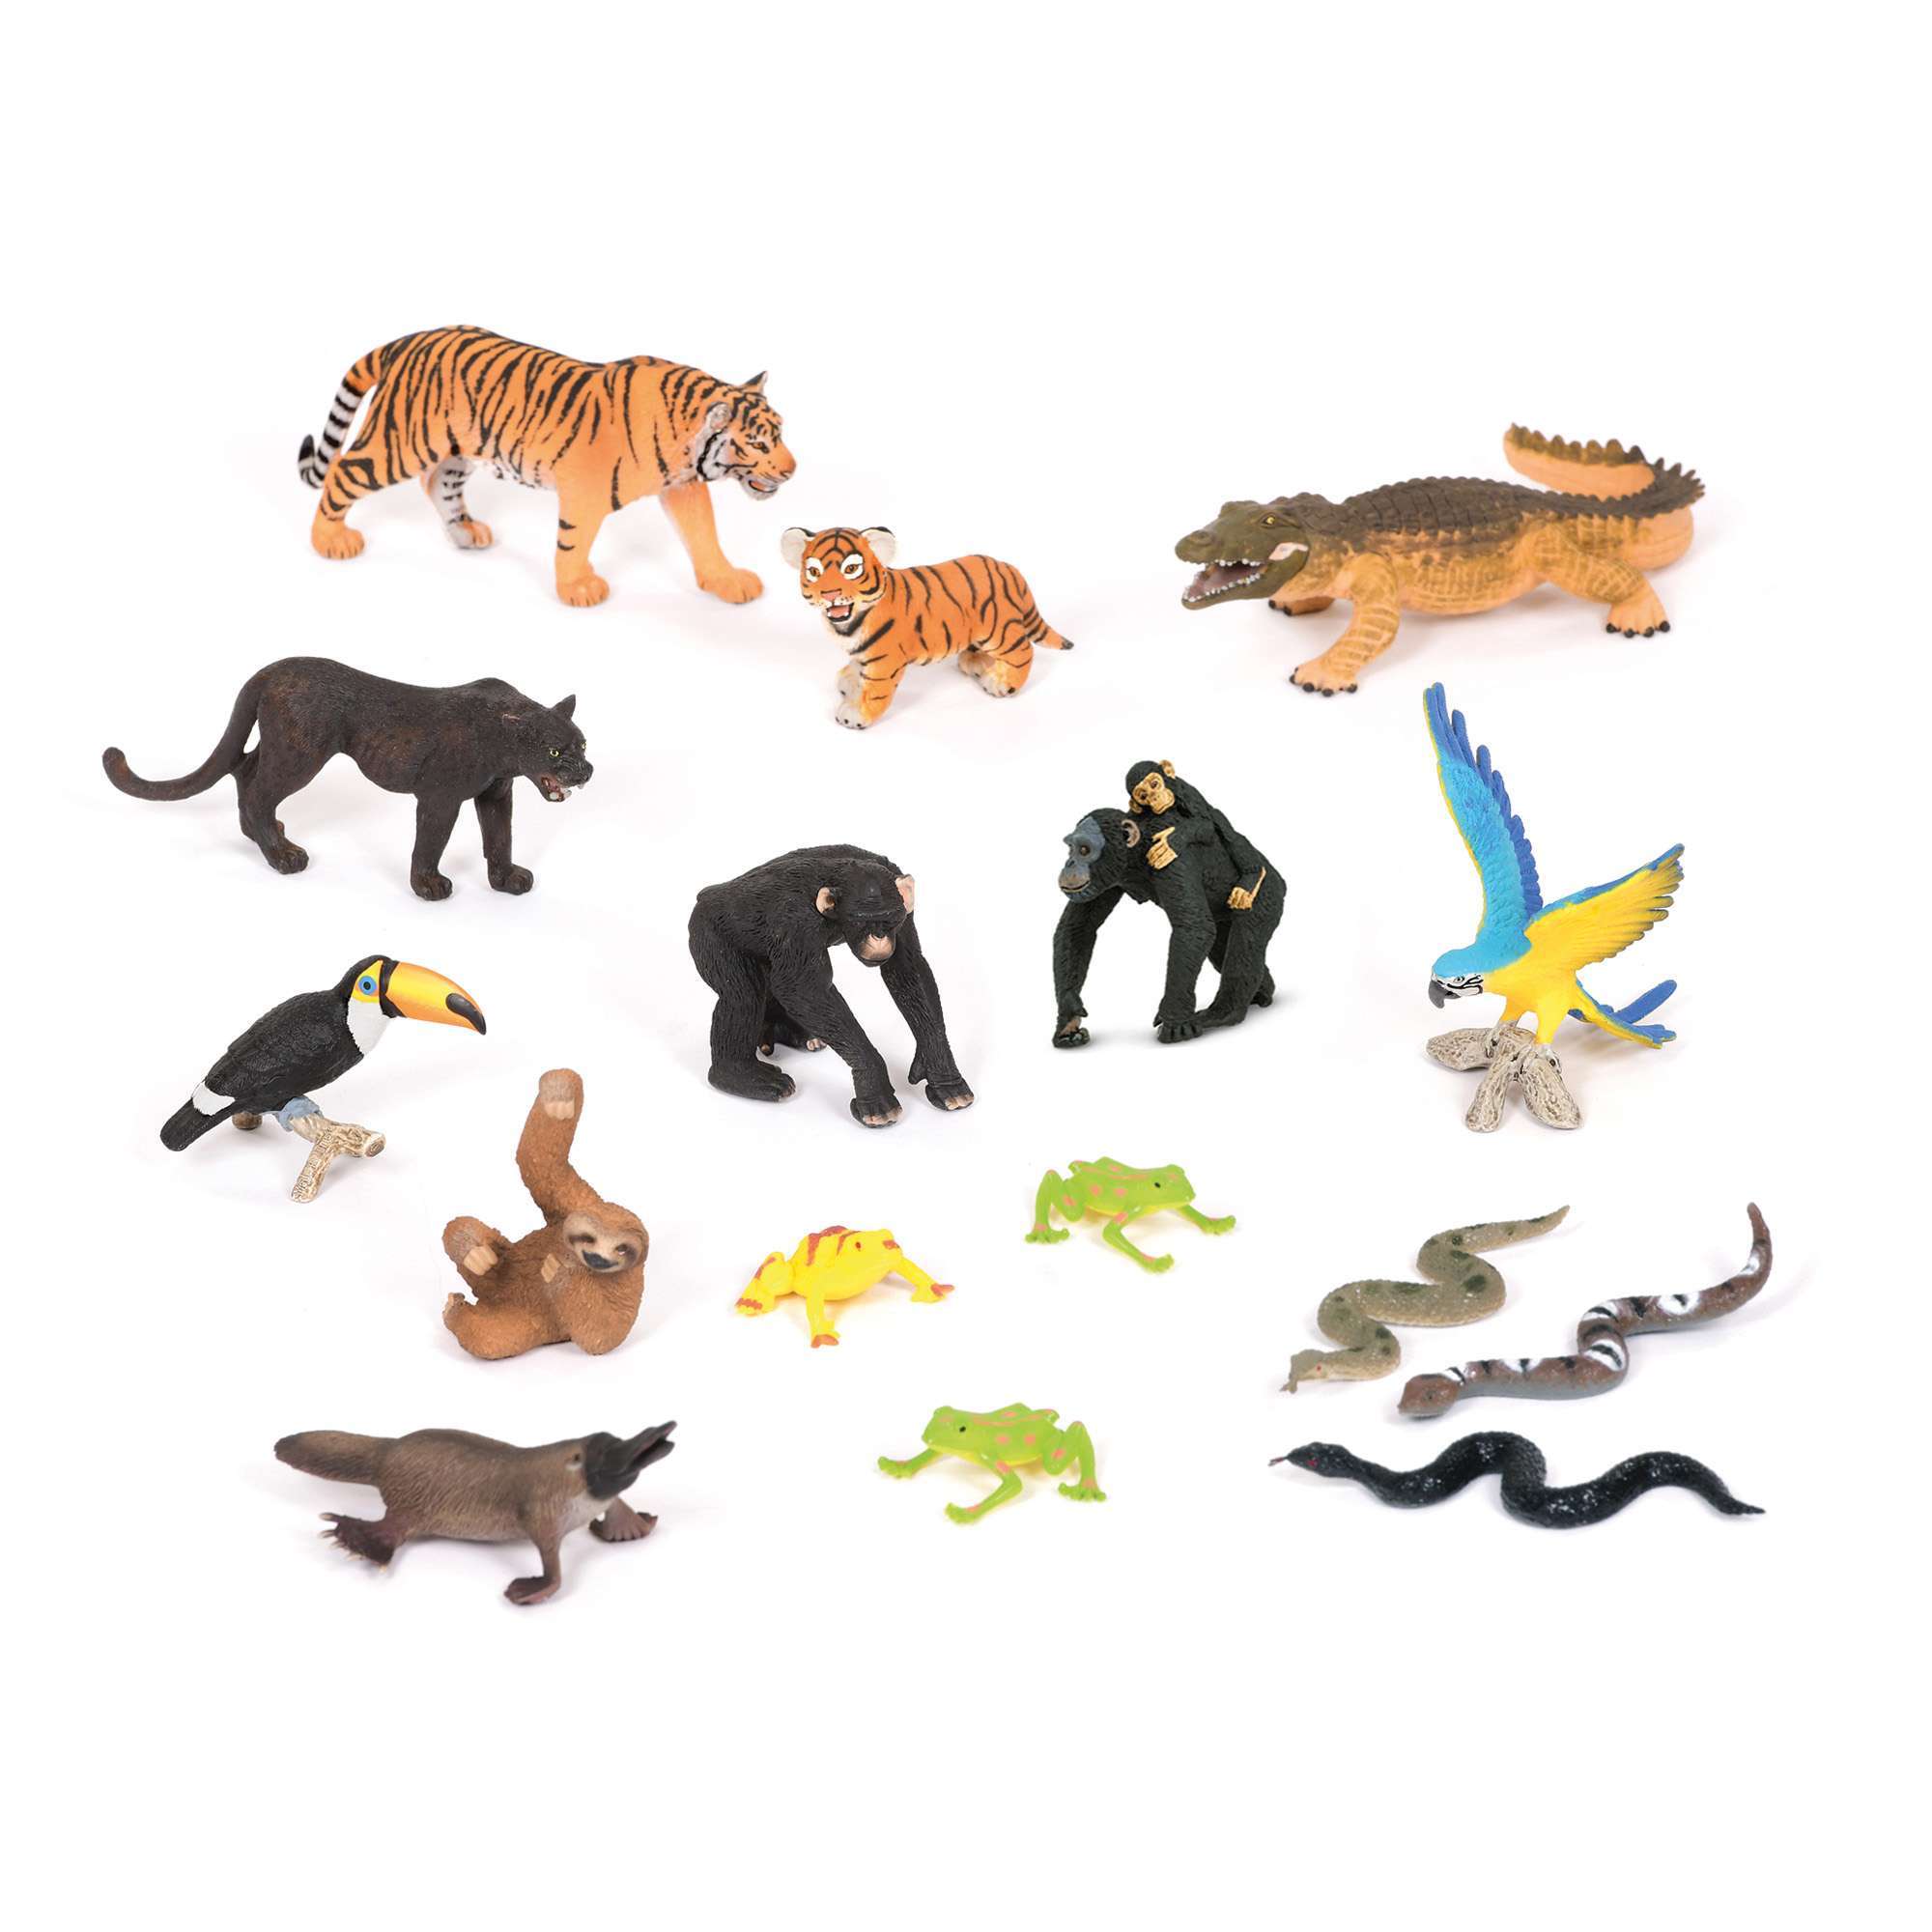 Jungle Animals Collection KS1 Develop Scientific Knowledge